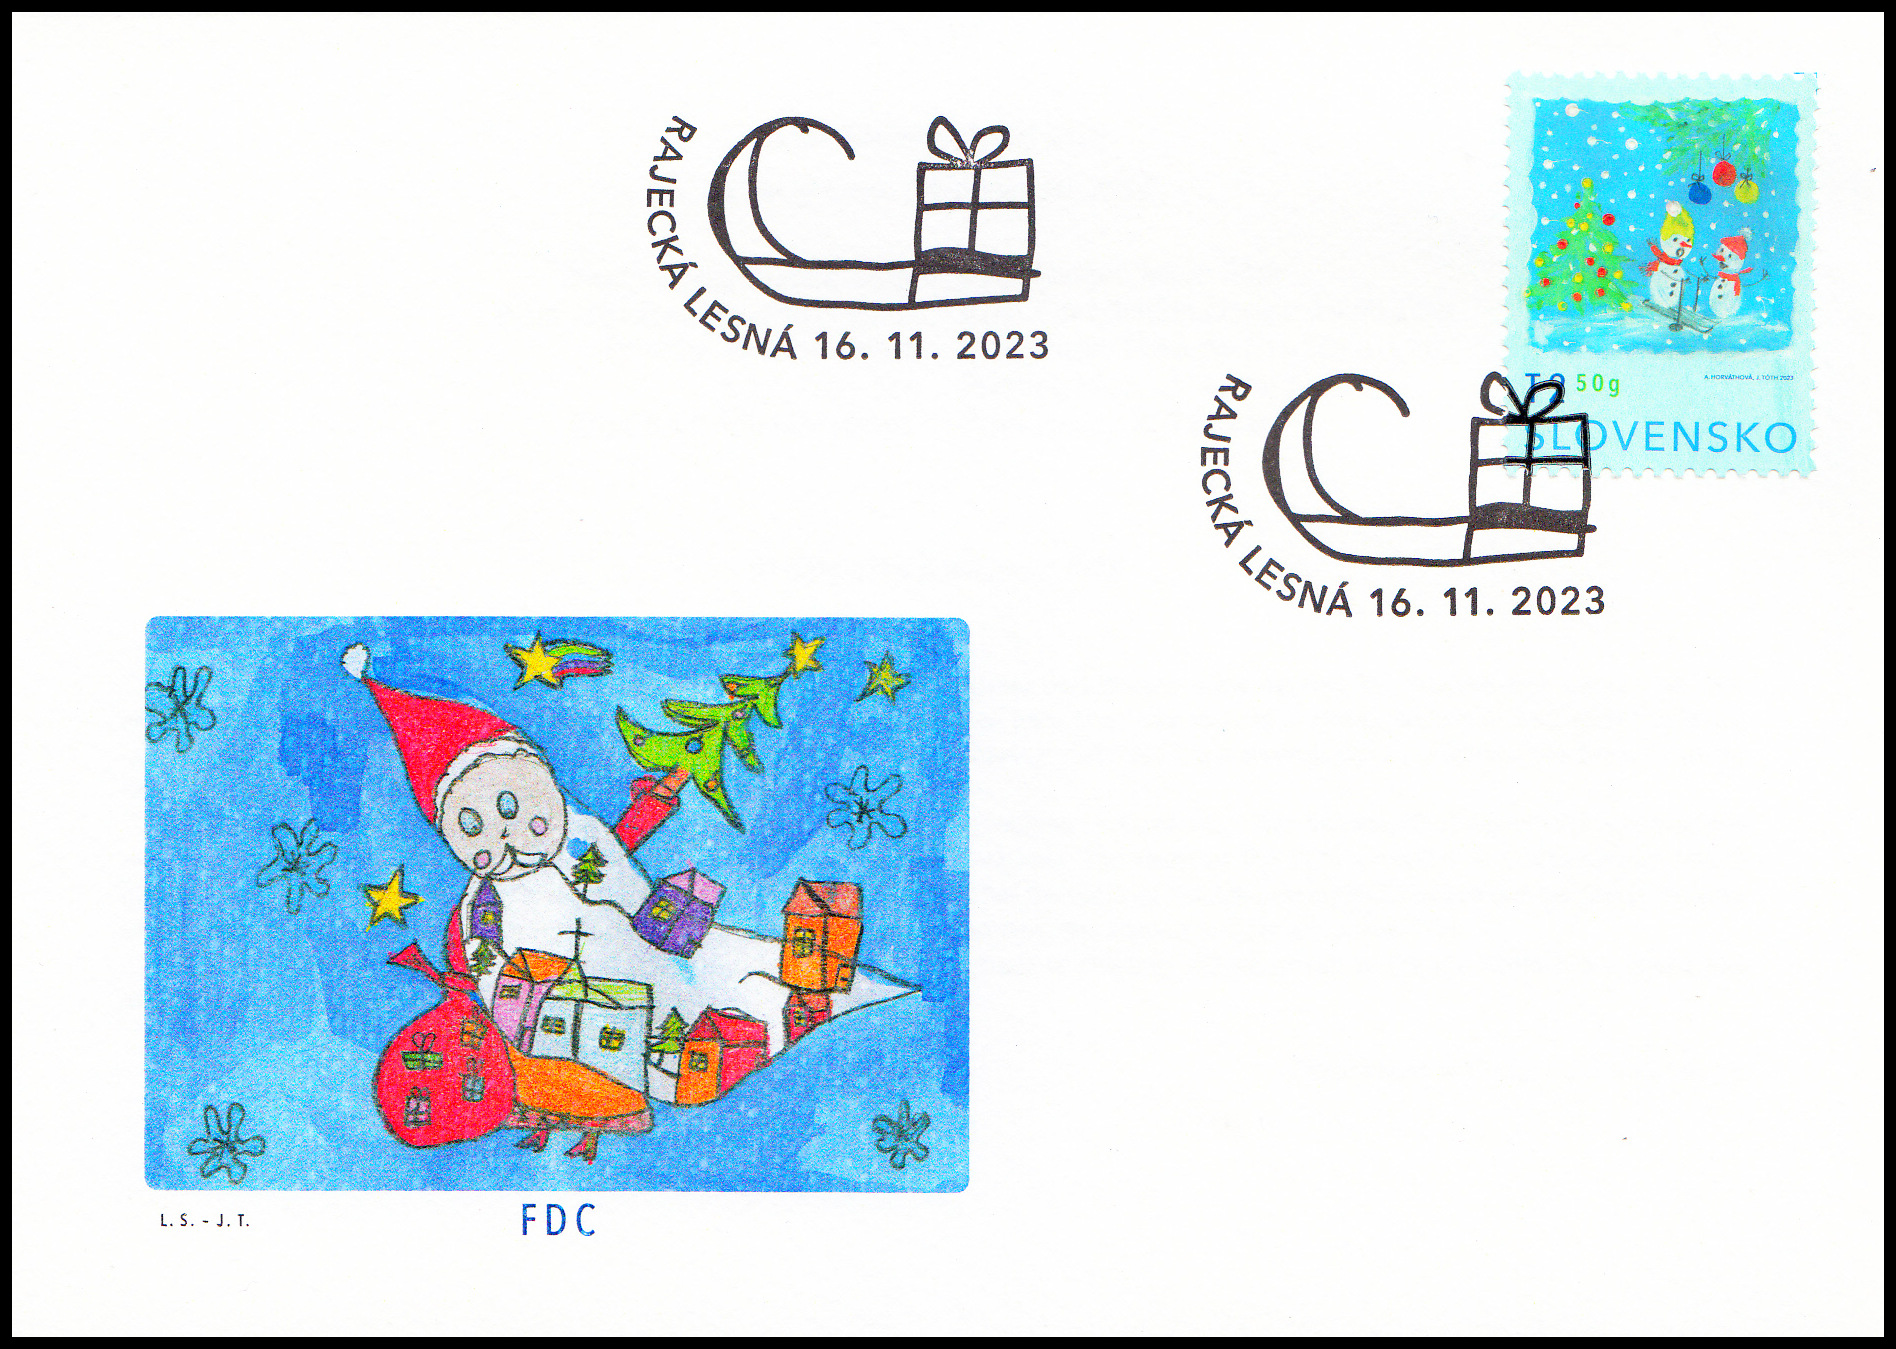 FDC - Vánoční pošta 2023